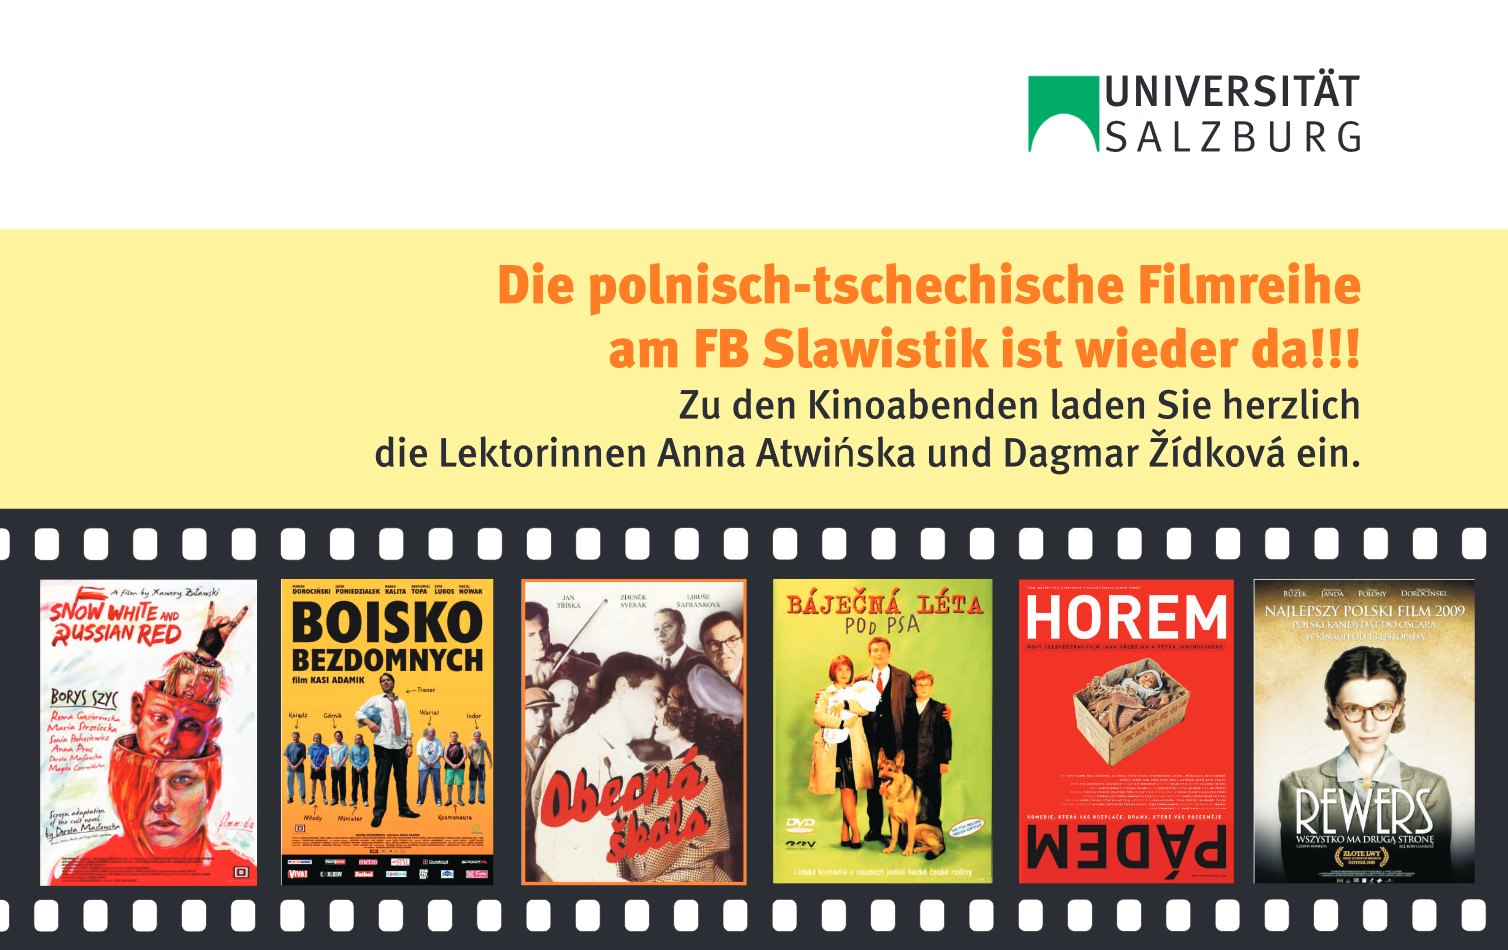 Filmplakat zur Polnisch-Tschechischen Filmreihe SoSe 2010